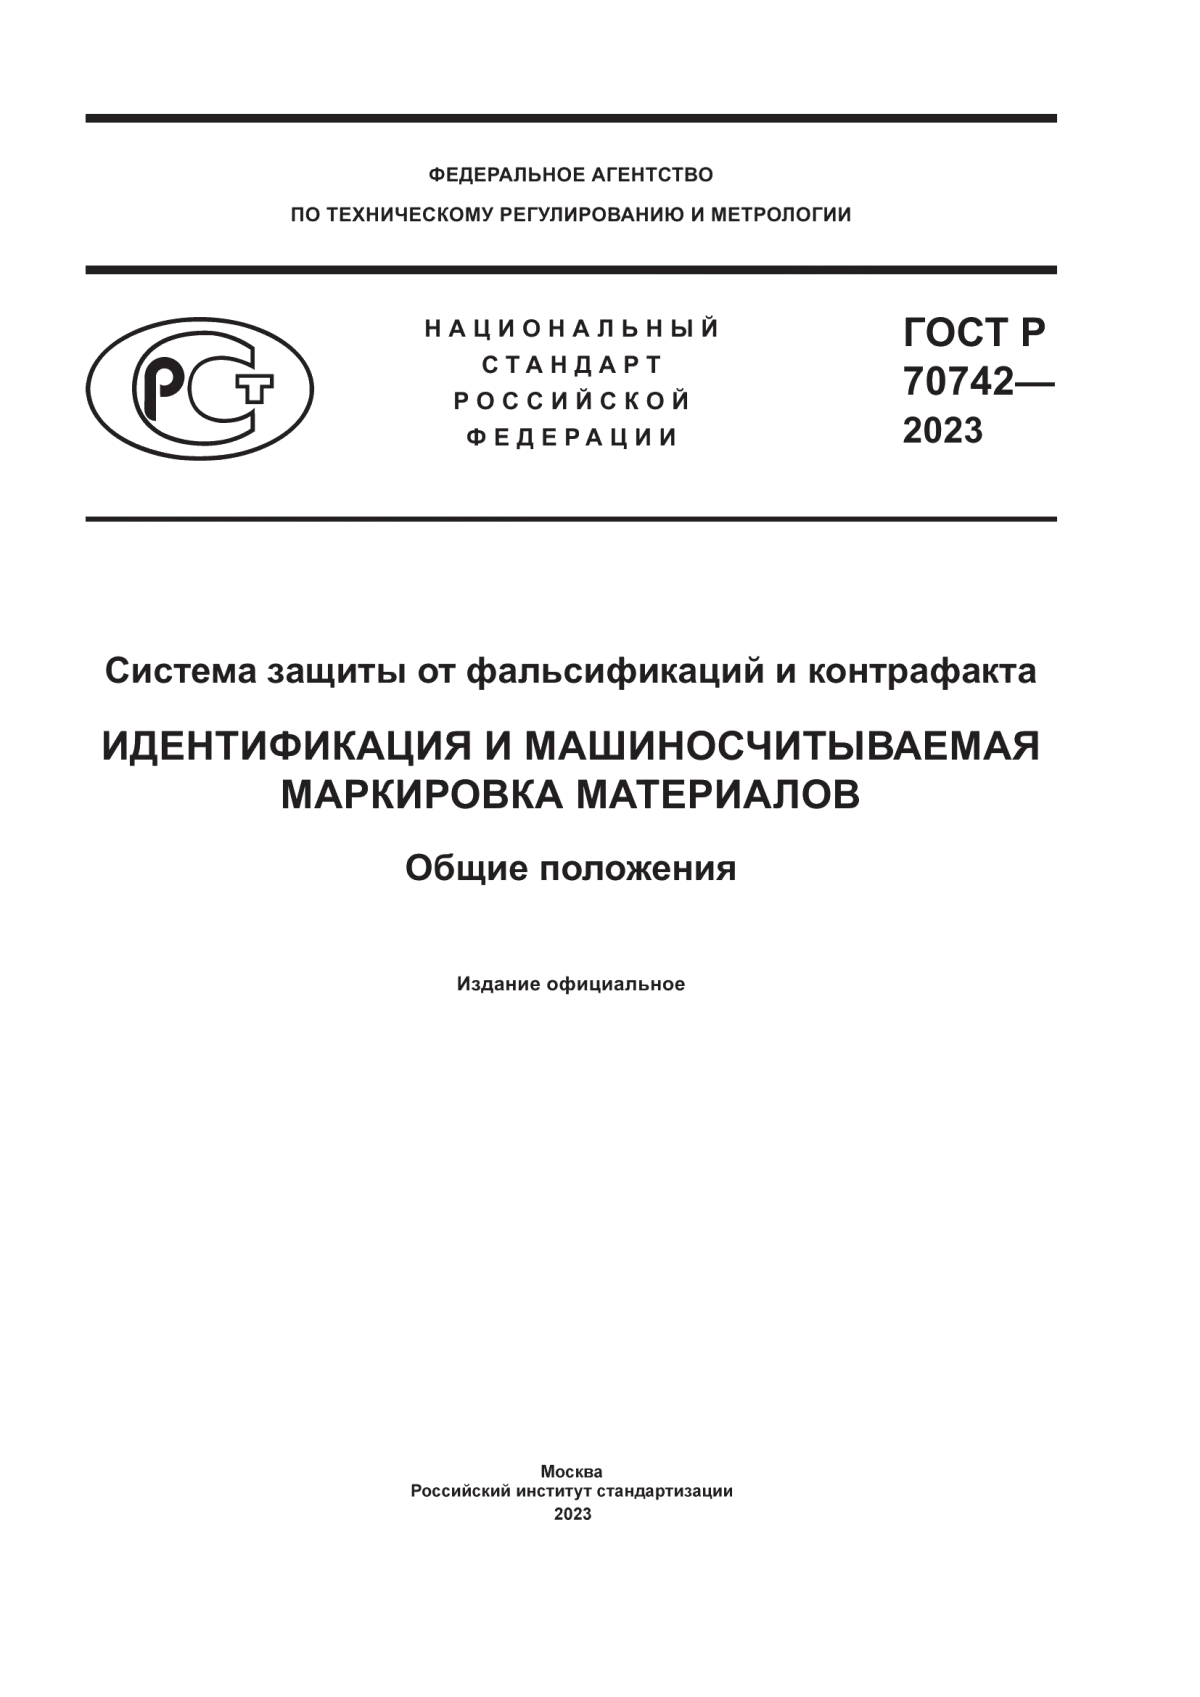 ГОСТ Р 70742-2023 Система защиты от фальсификаций и контрафакта. Идентификация и машиносчитываемая маркировка материалов. Общие положения